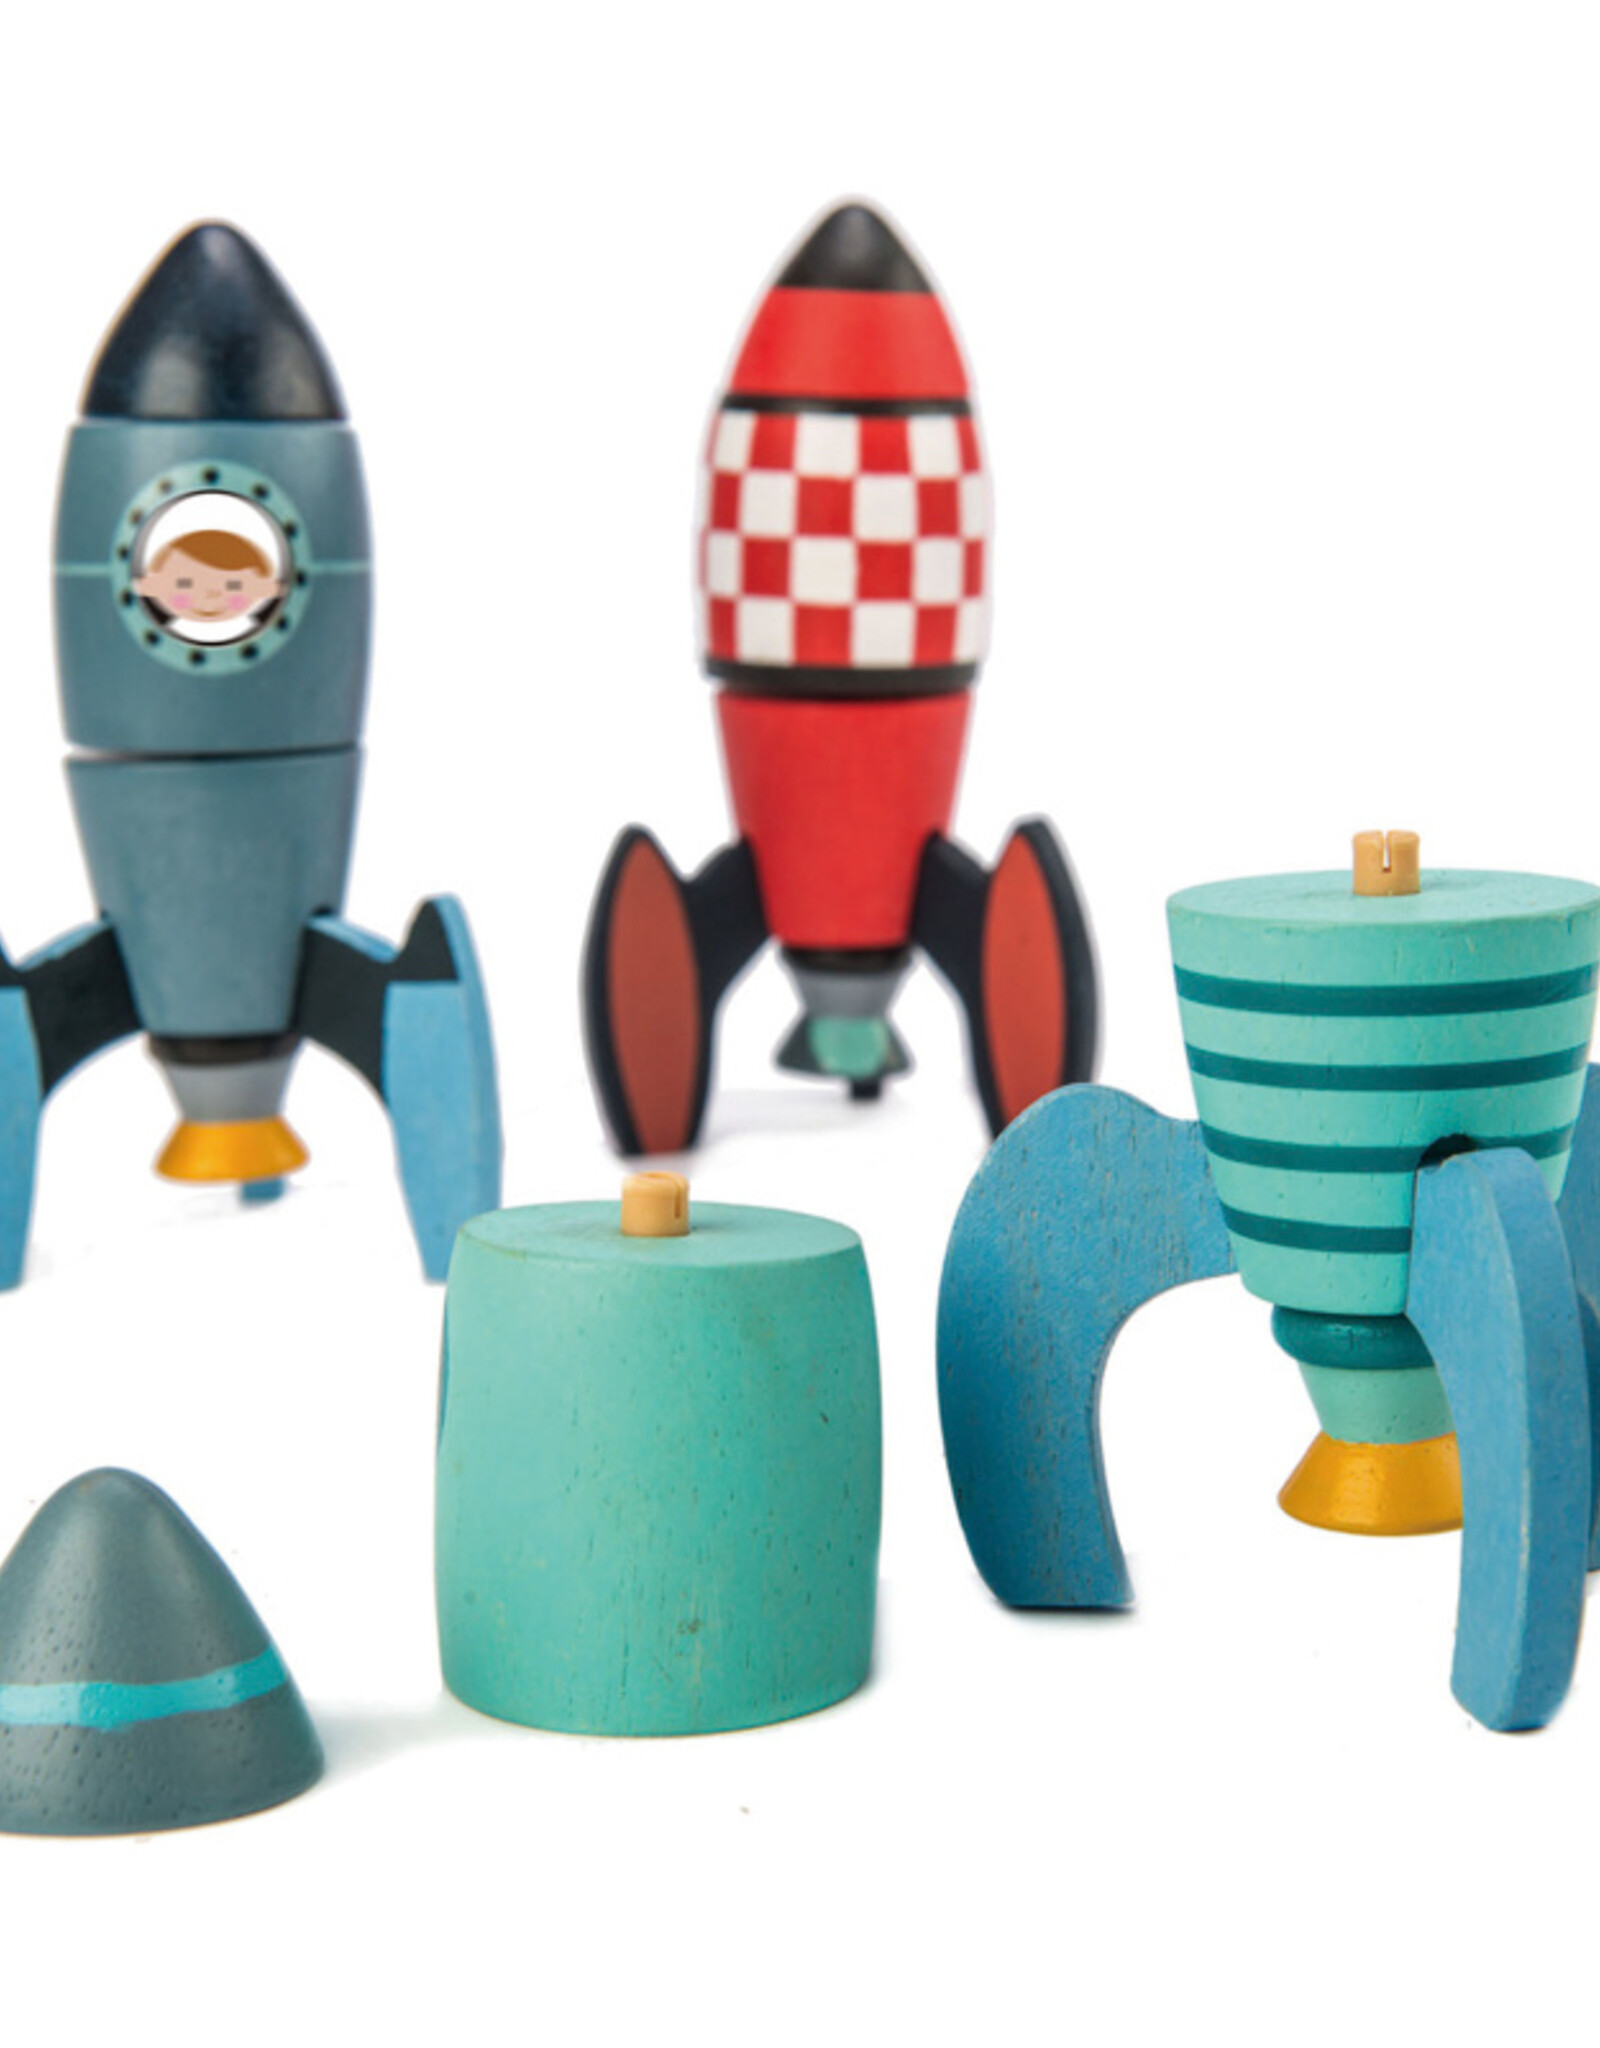 Tender Leaf Toys Tender Leaf Toys - Rocket Construction Set